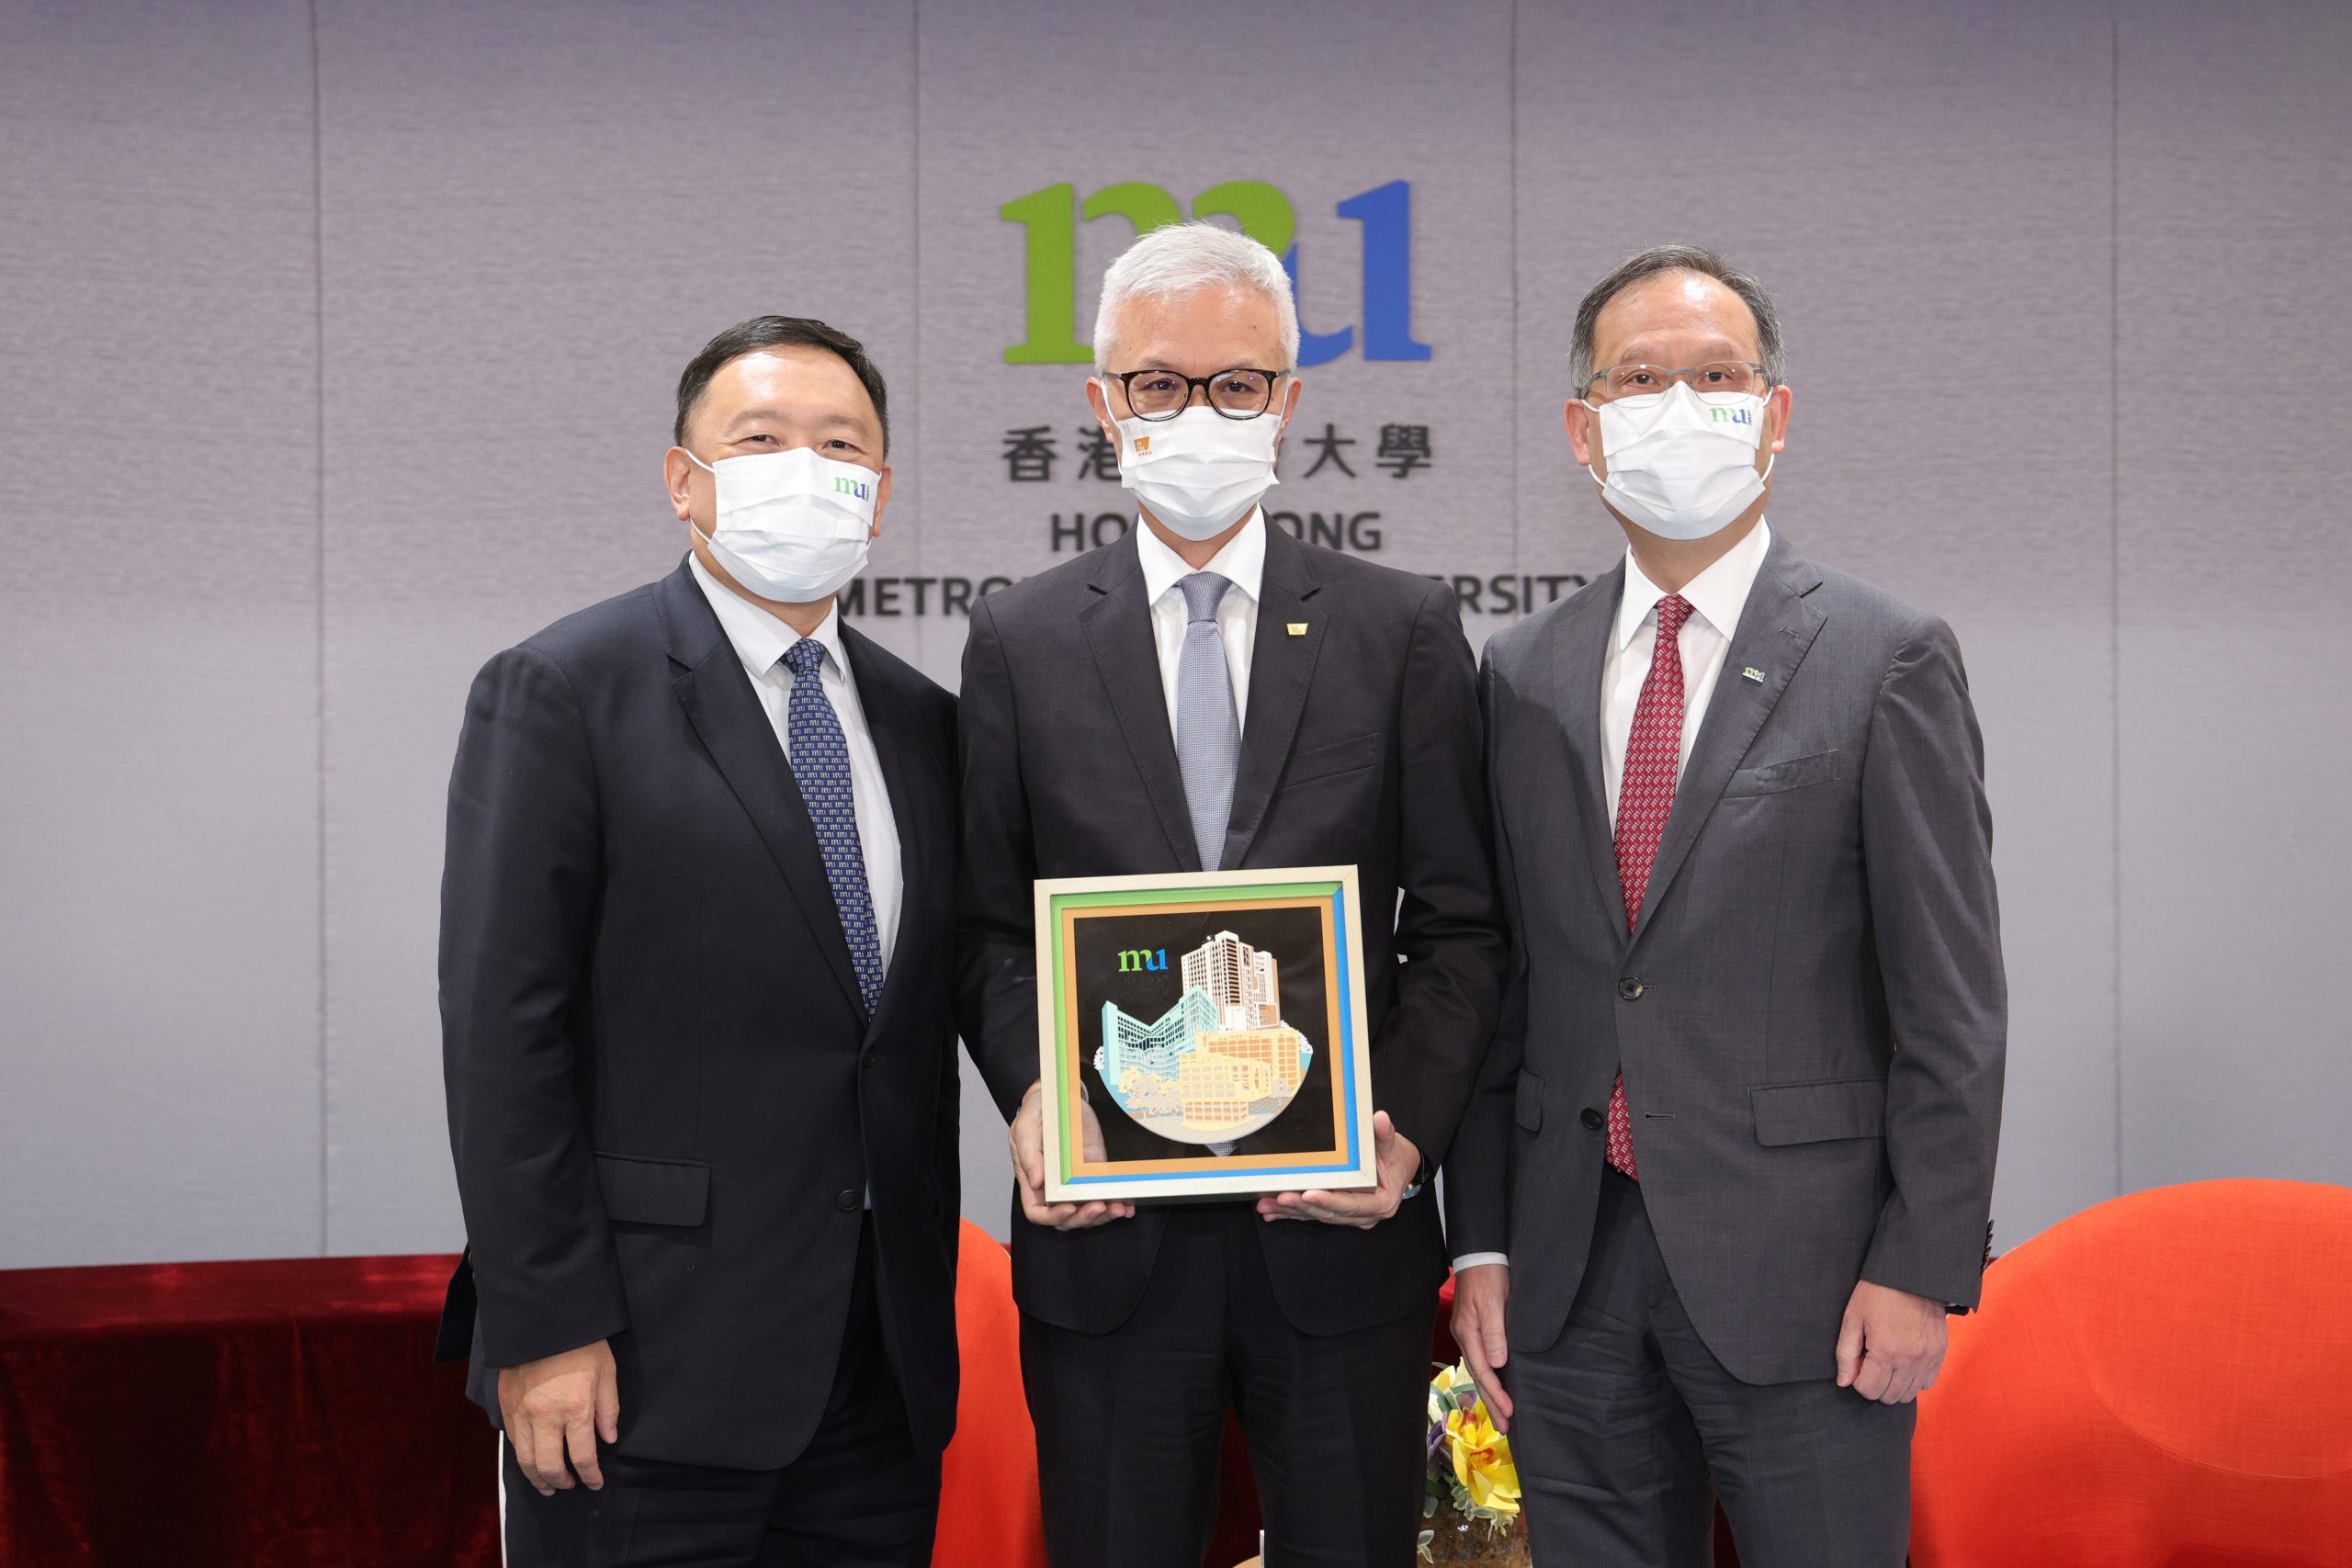 香港都会大学校董会主席黄天祥博士工程师（左）及校长林群声教授（右）致送纪念品予香港故宫文化博物馆馆长吴志华博士（中）。